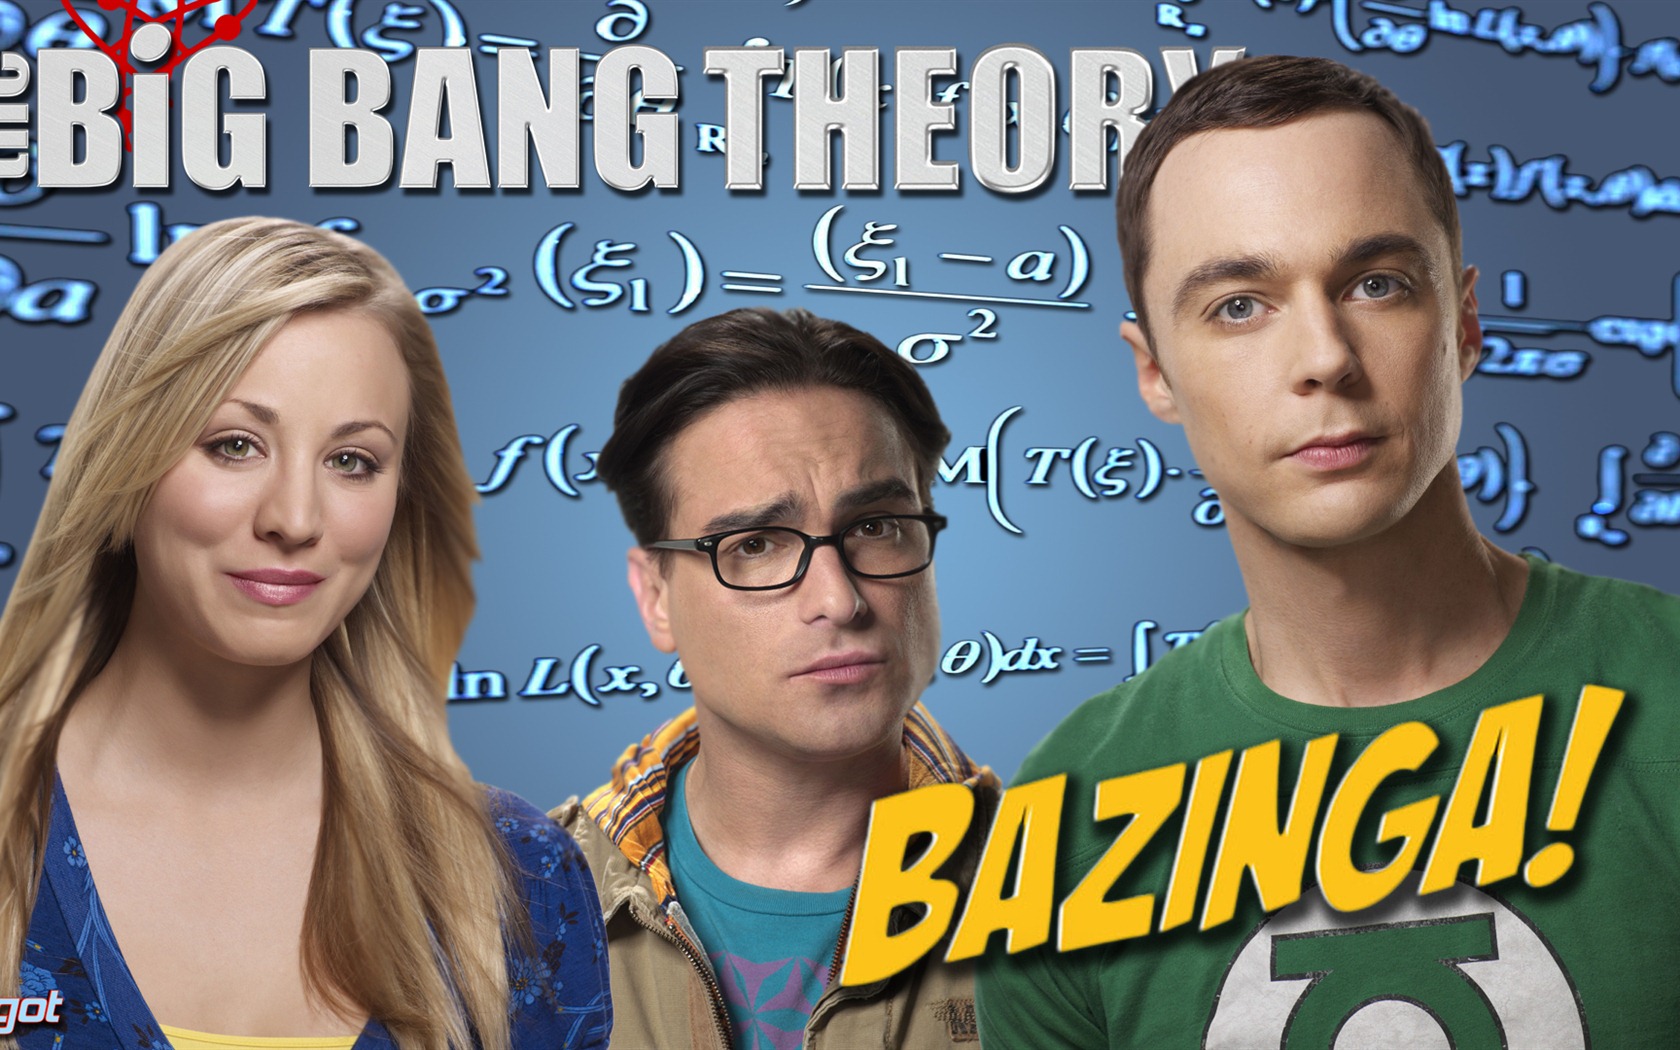 The Big Bang Theory 生活大爆炸 电视剧高清壁纸7 - 1680x1050